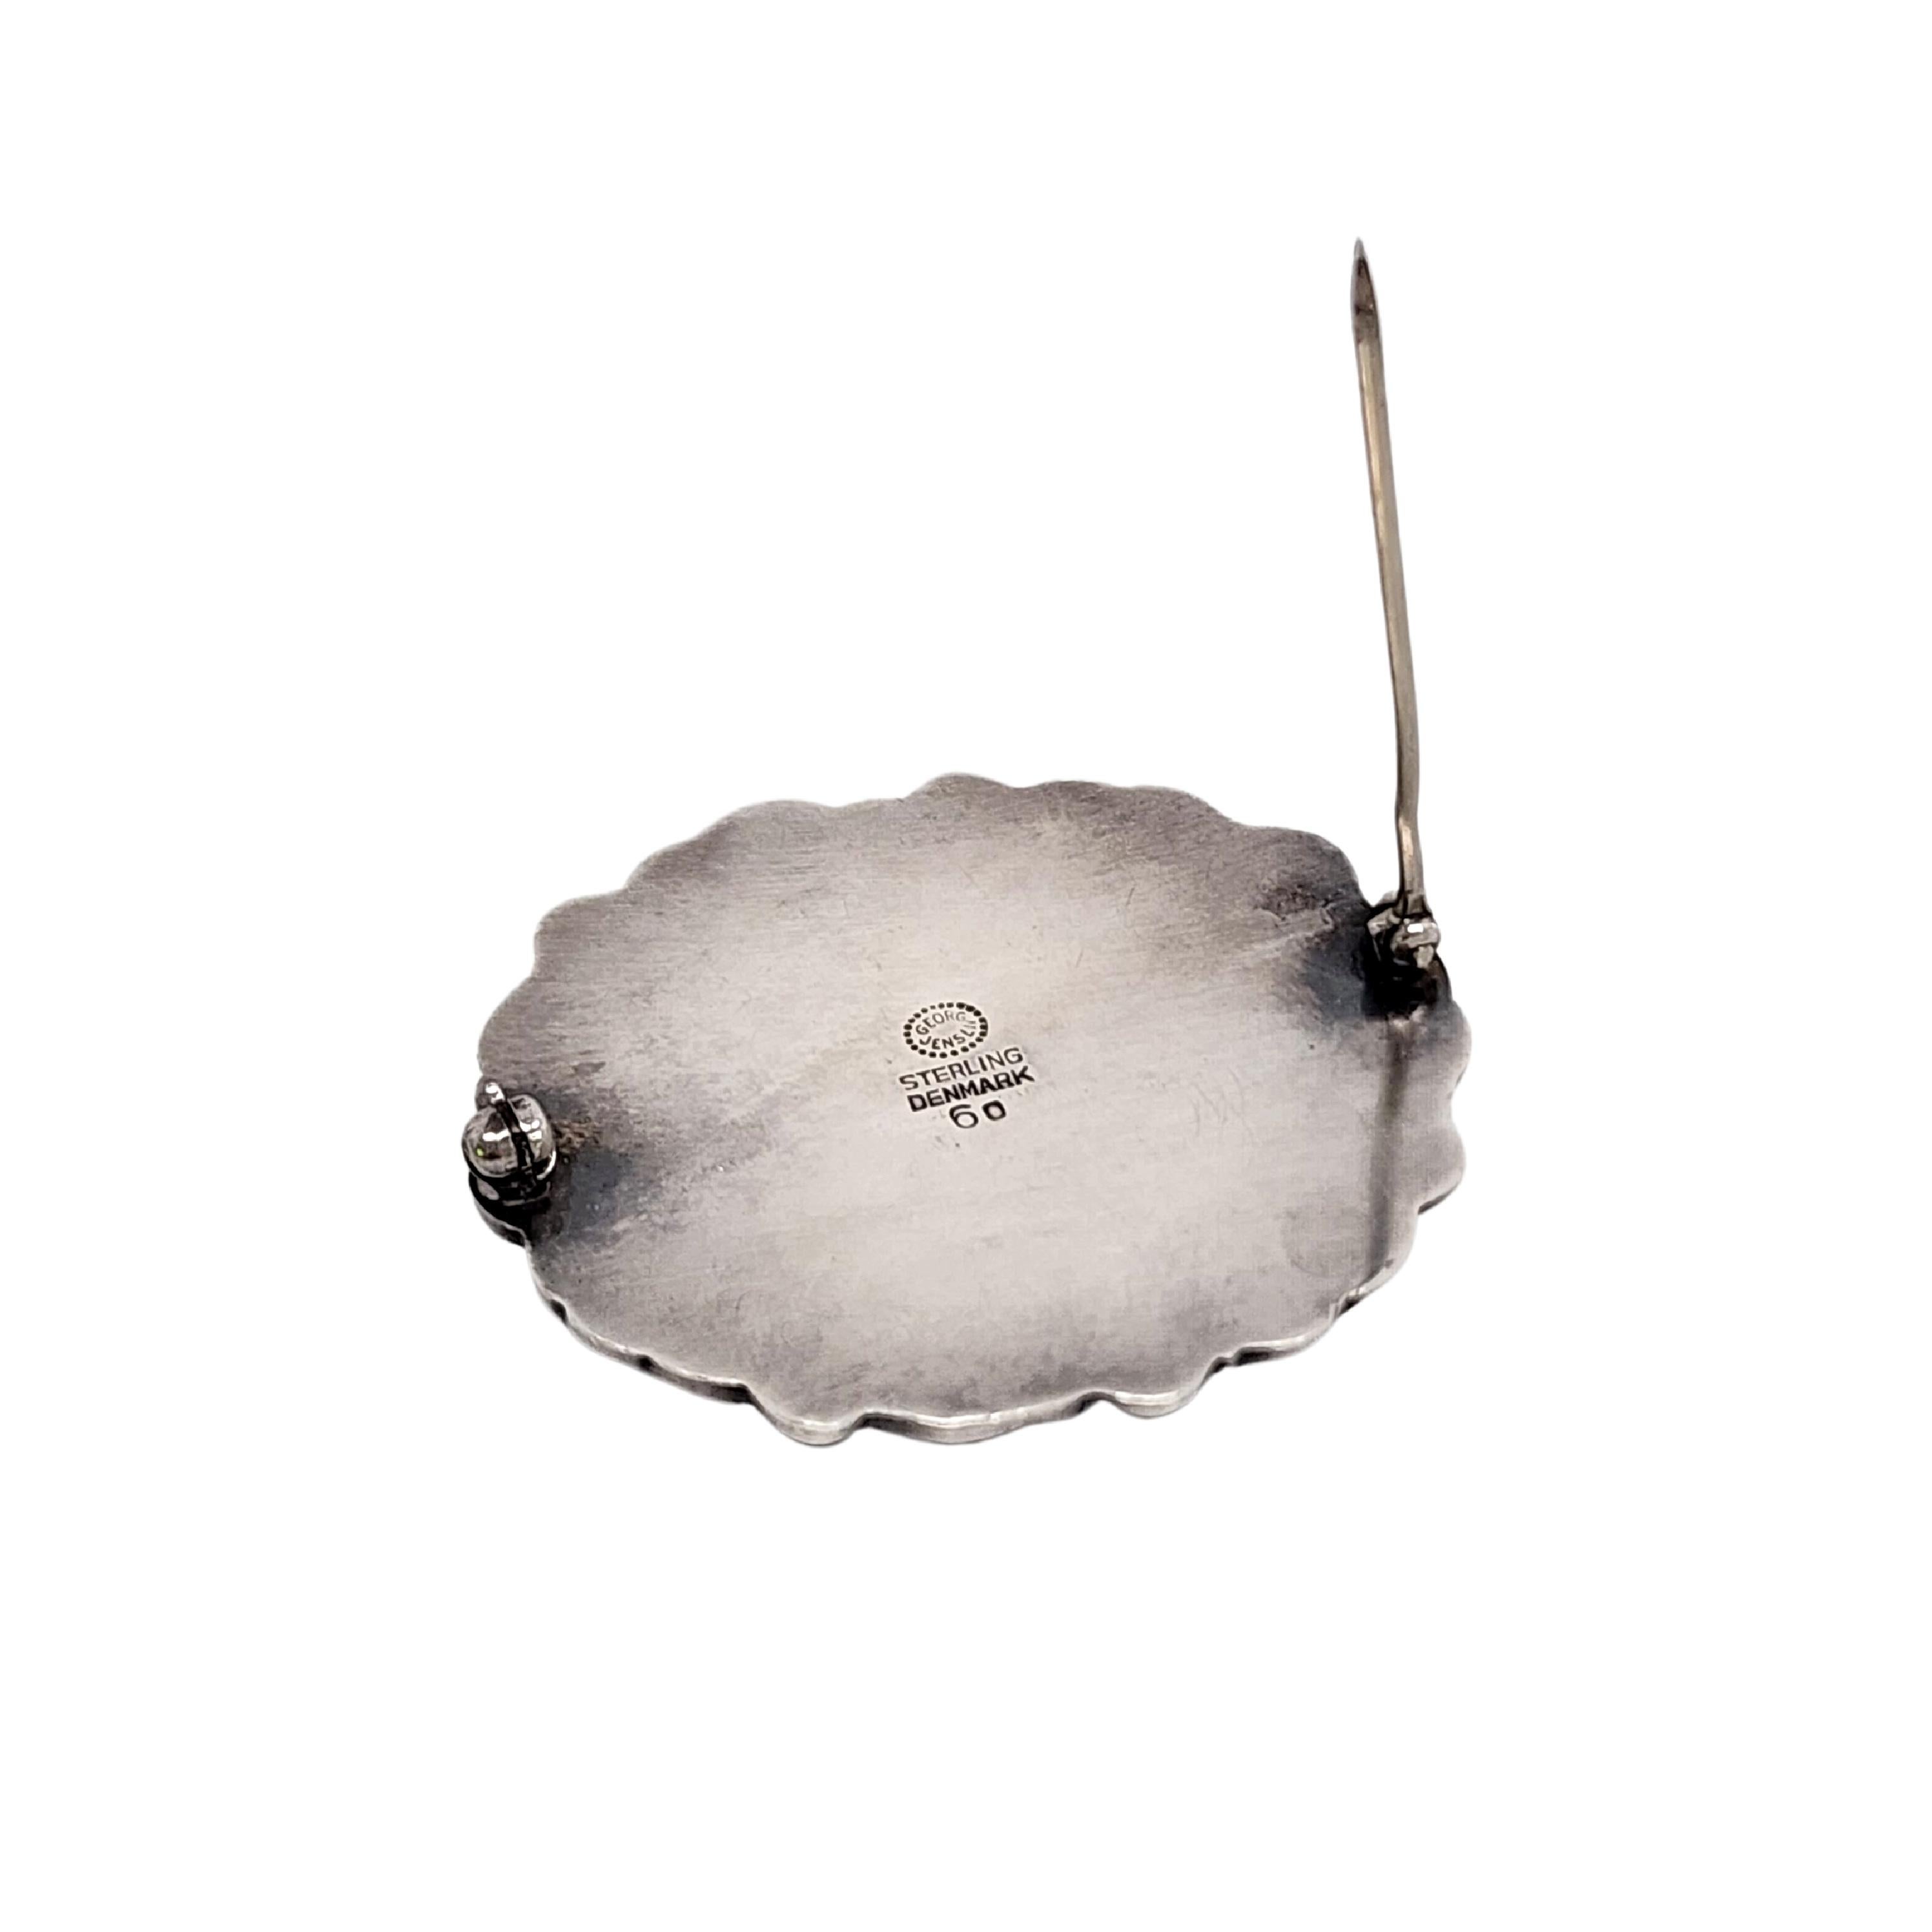 Women's Georg Jensen Denmark Sterling Silver 60 Oval Dome Leaf Pin/Brooch #14682 For Sale